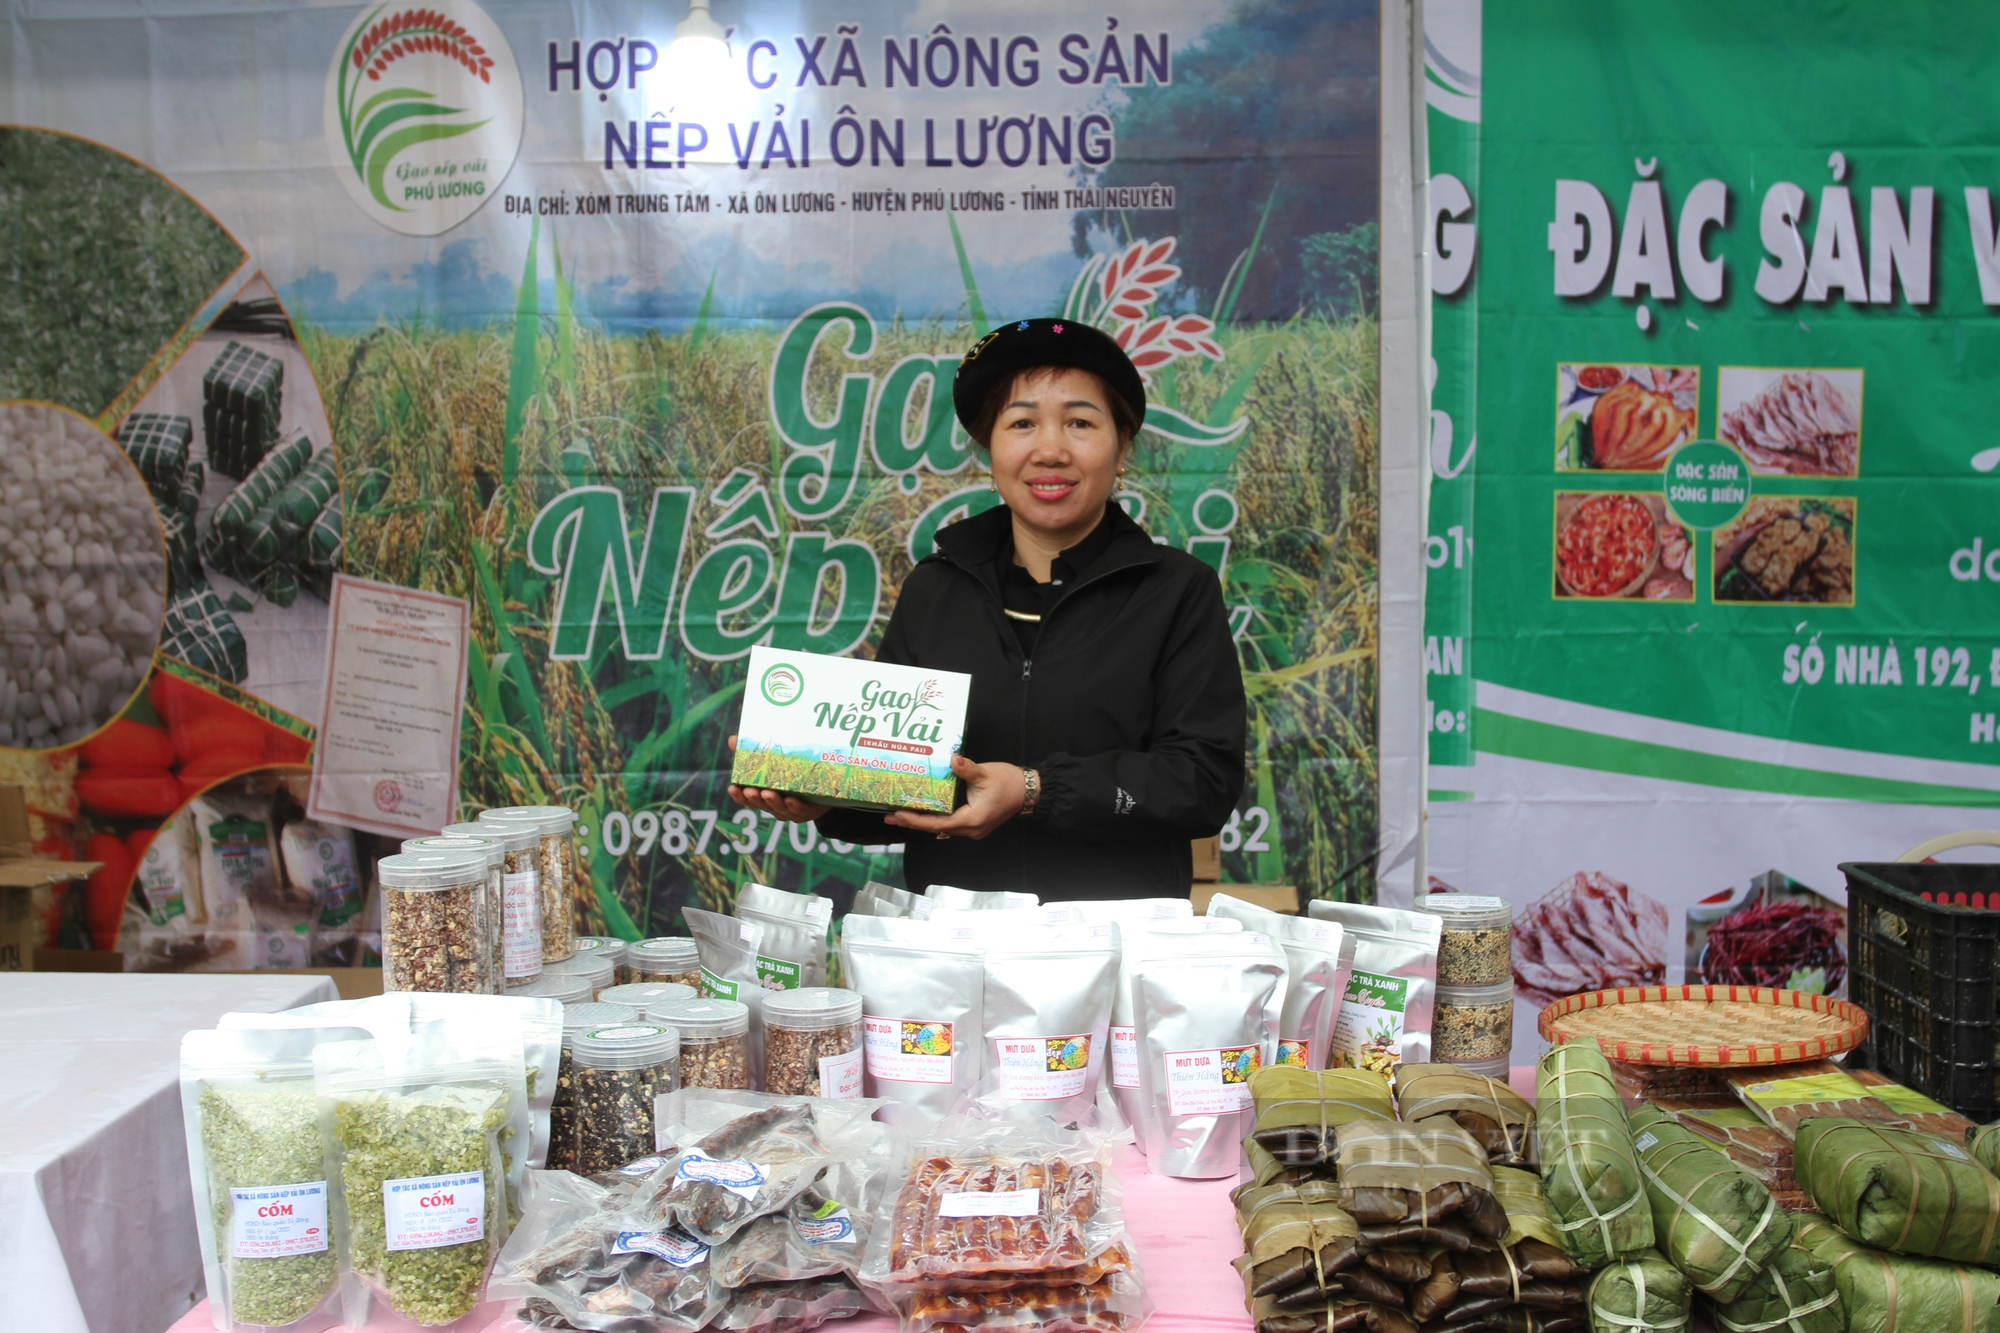 HND Thái Nguyên ứng dụng chuyển đổi số trong bình chọn, đánh giá chất lượng sản phẩm nông nghiệp tiêu biểu năm 2023 - Ảnh 3.